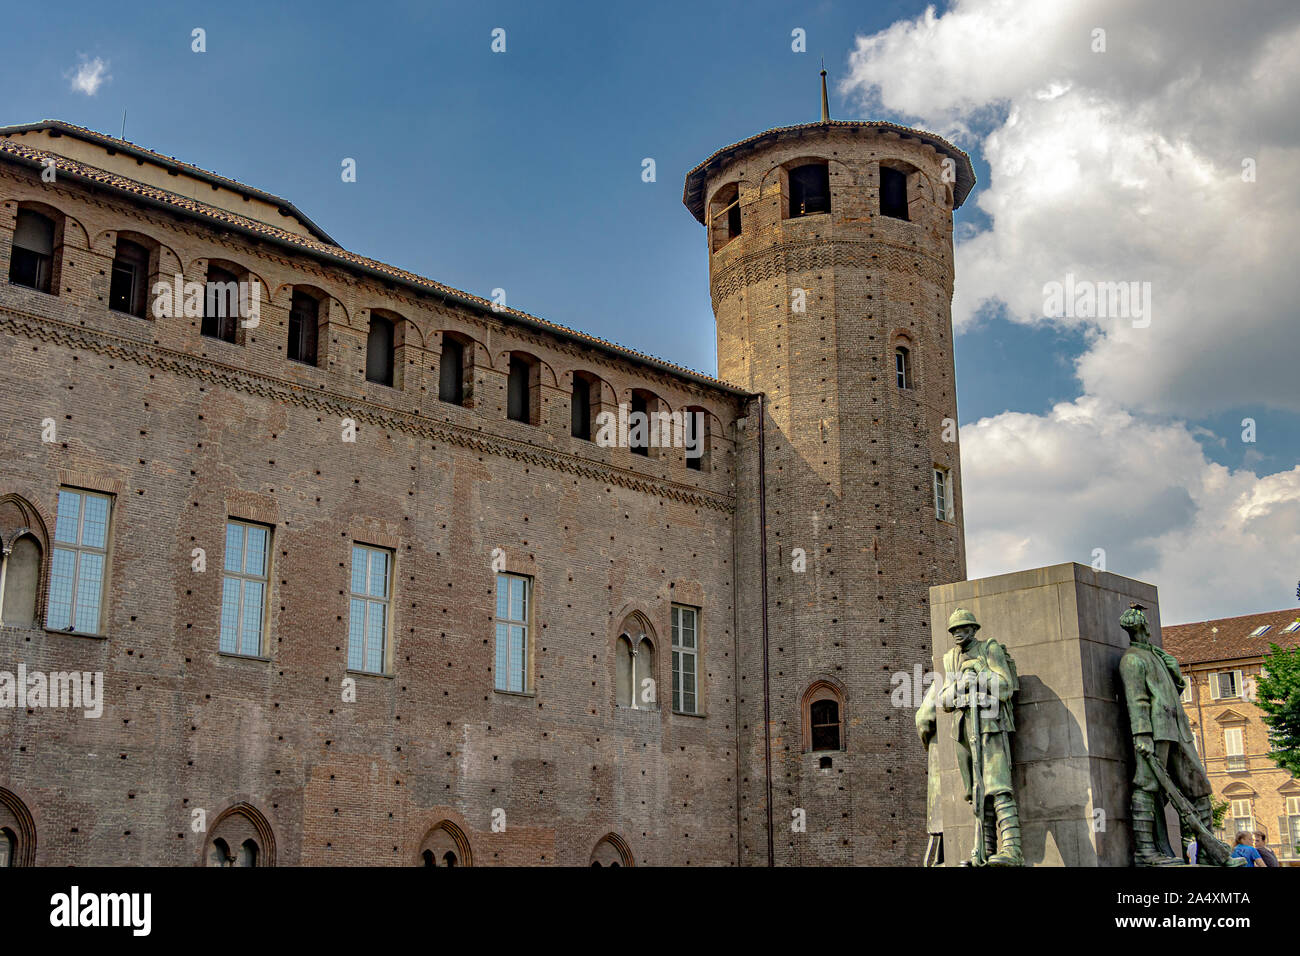 La torre in mattoni del Castello Acaja nella parte posteriore del Palazzo Madama di Torino , Italia Foto Stock